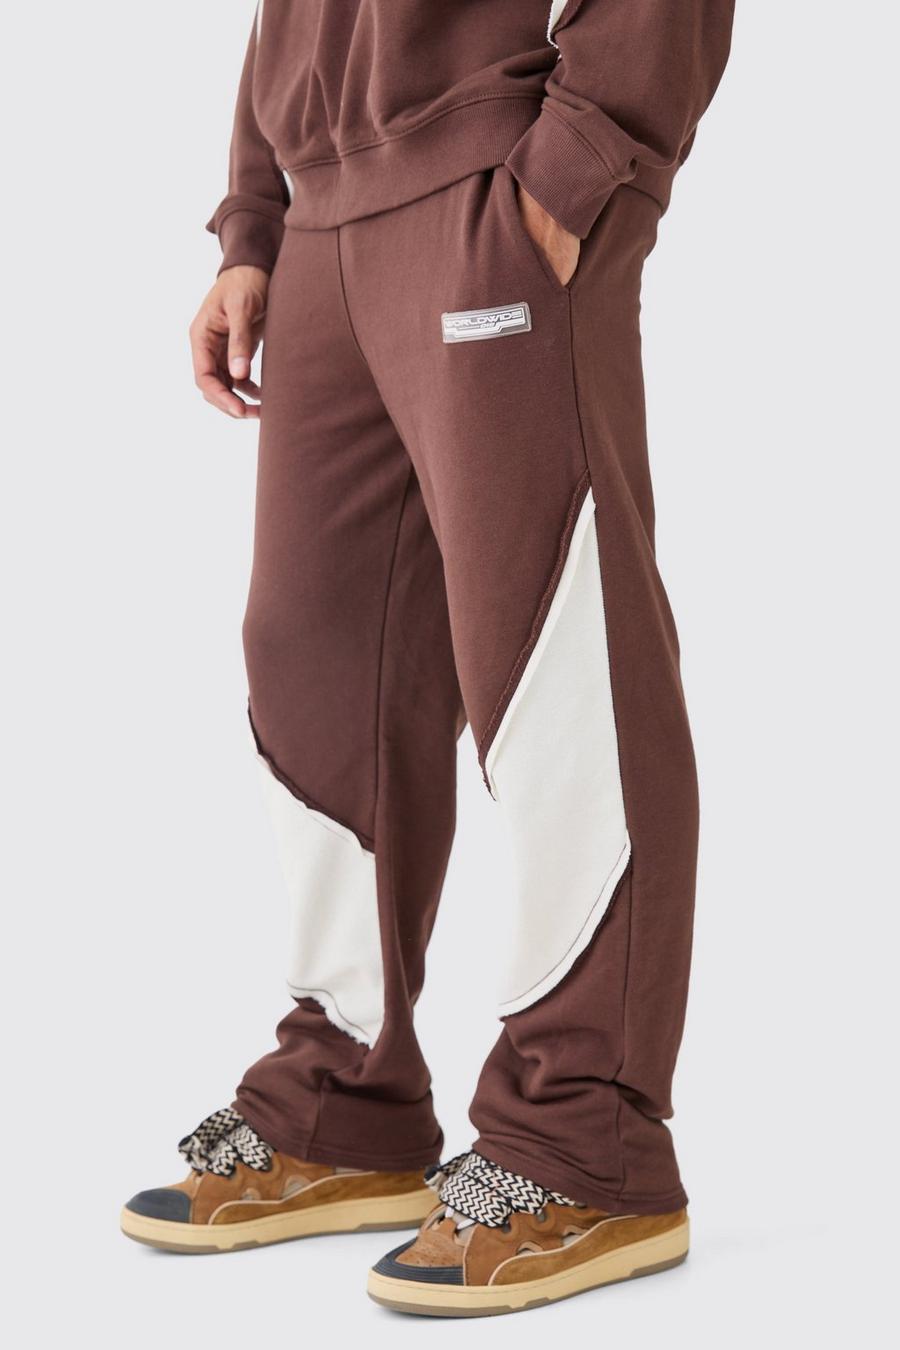 Pantaloni tuta rilassati con pannelli arricciati sul retro e fondo grezzo, Chocolate